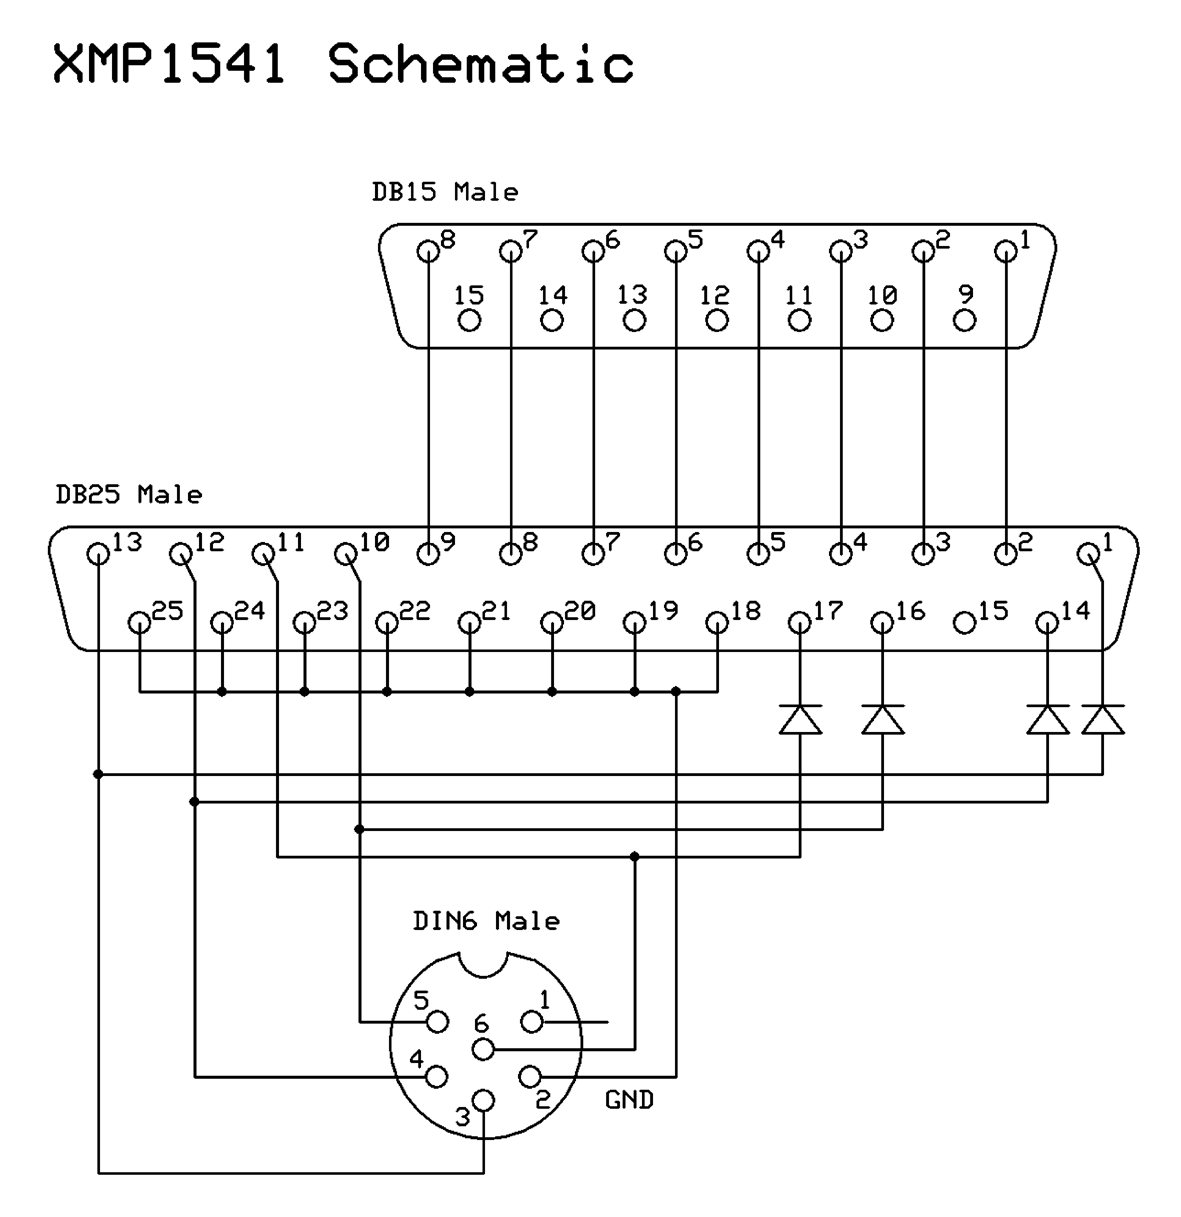 XMP1541 schematic